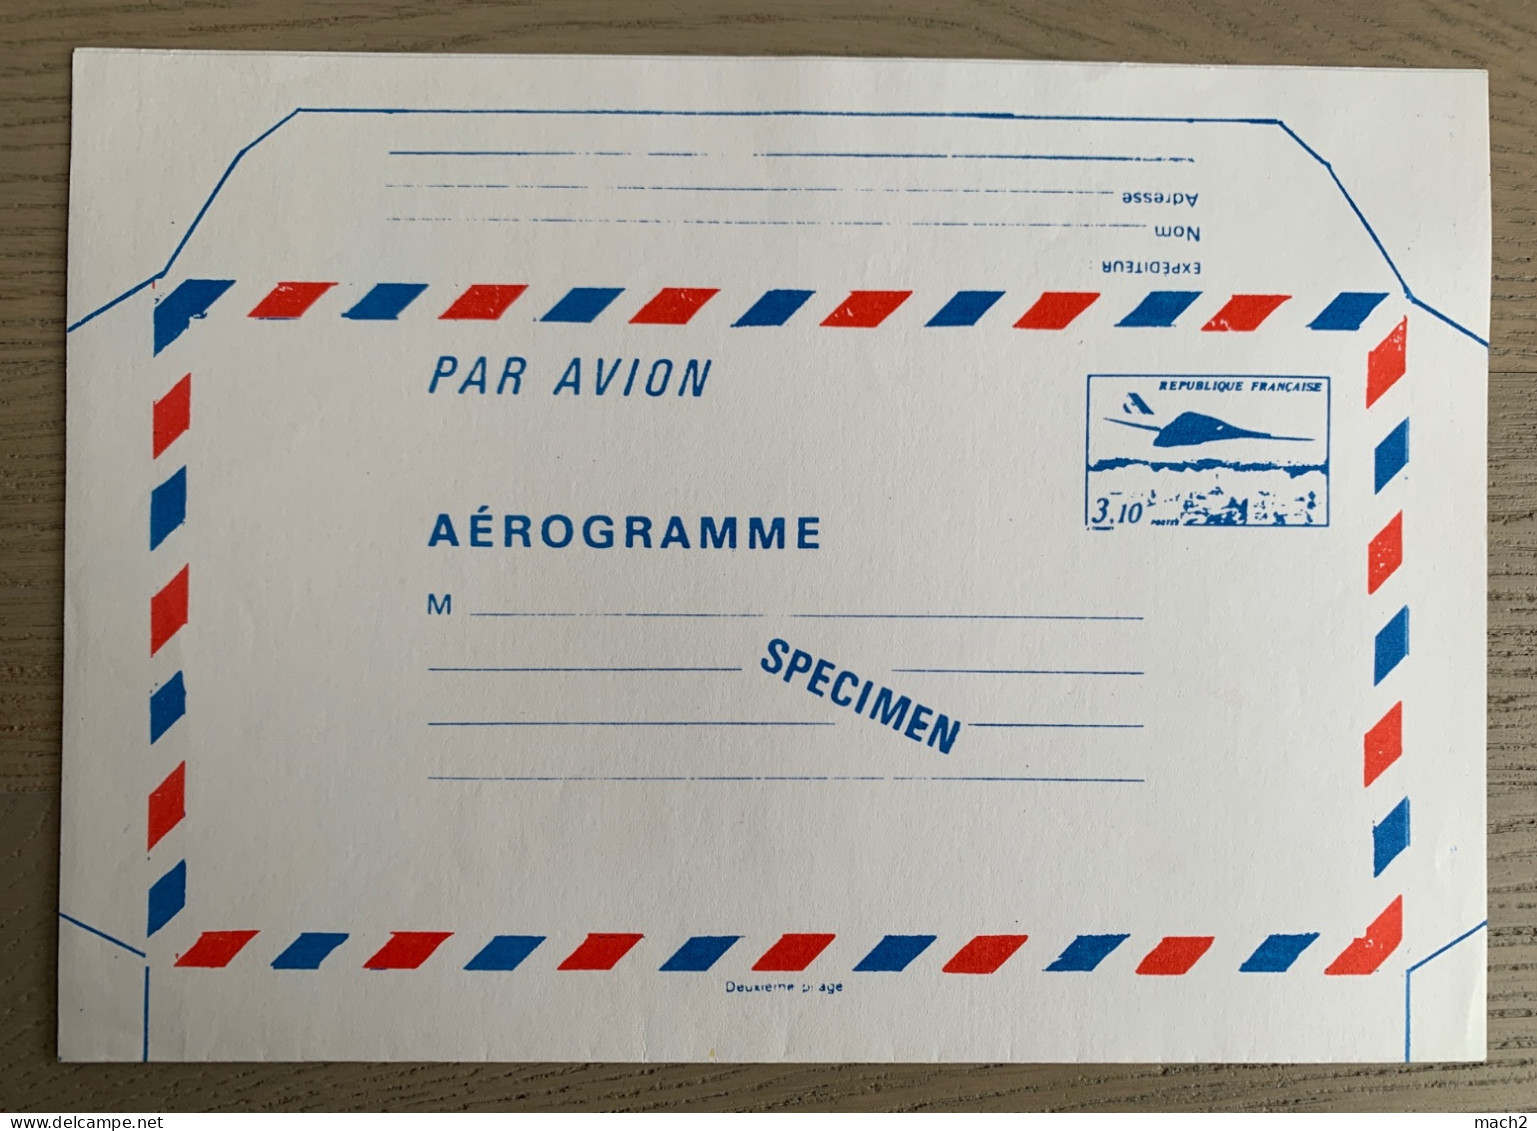 SPÉCIMEN Aerogramme Concorde 3,10 Cours Instruction - Concorde